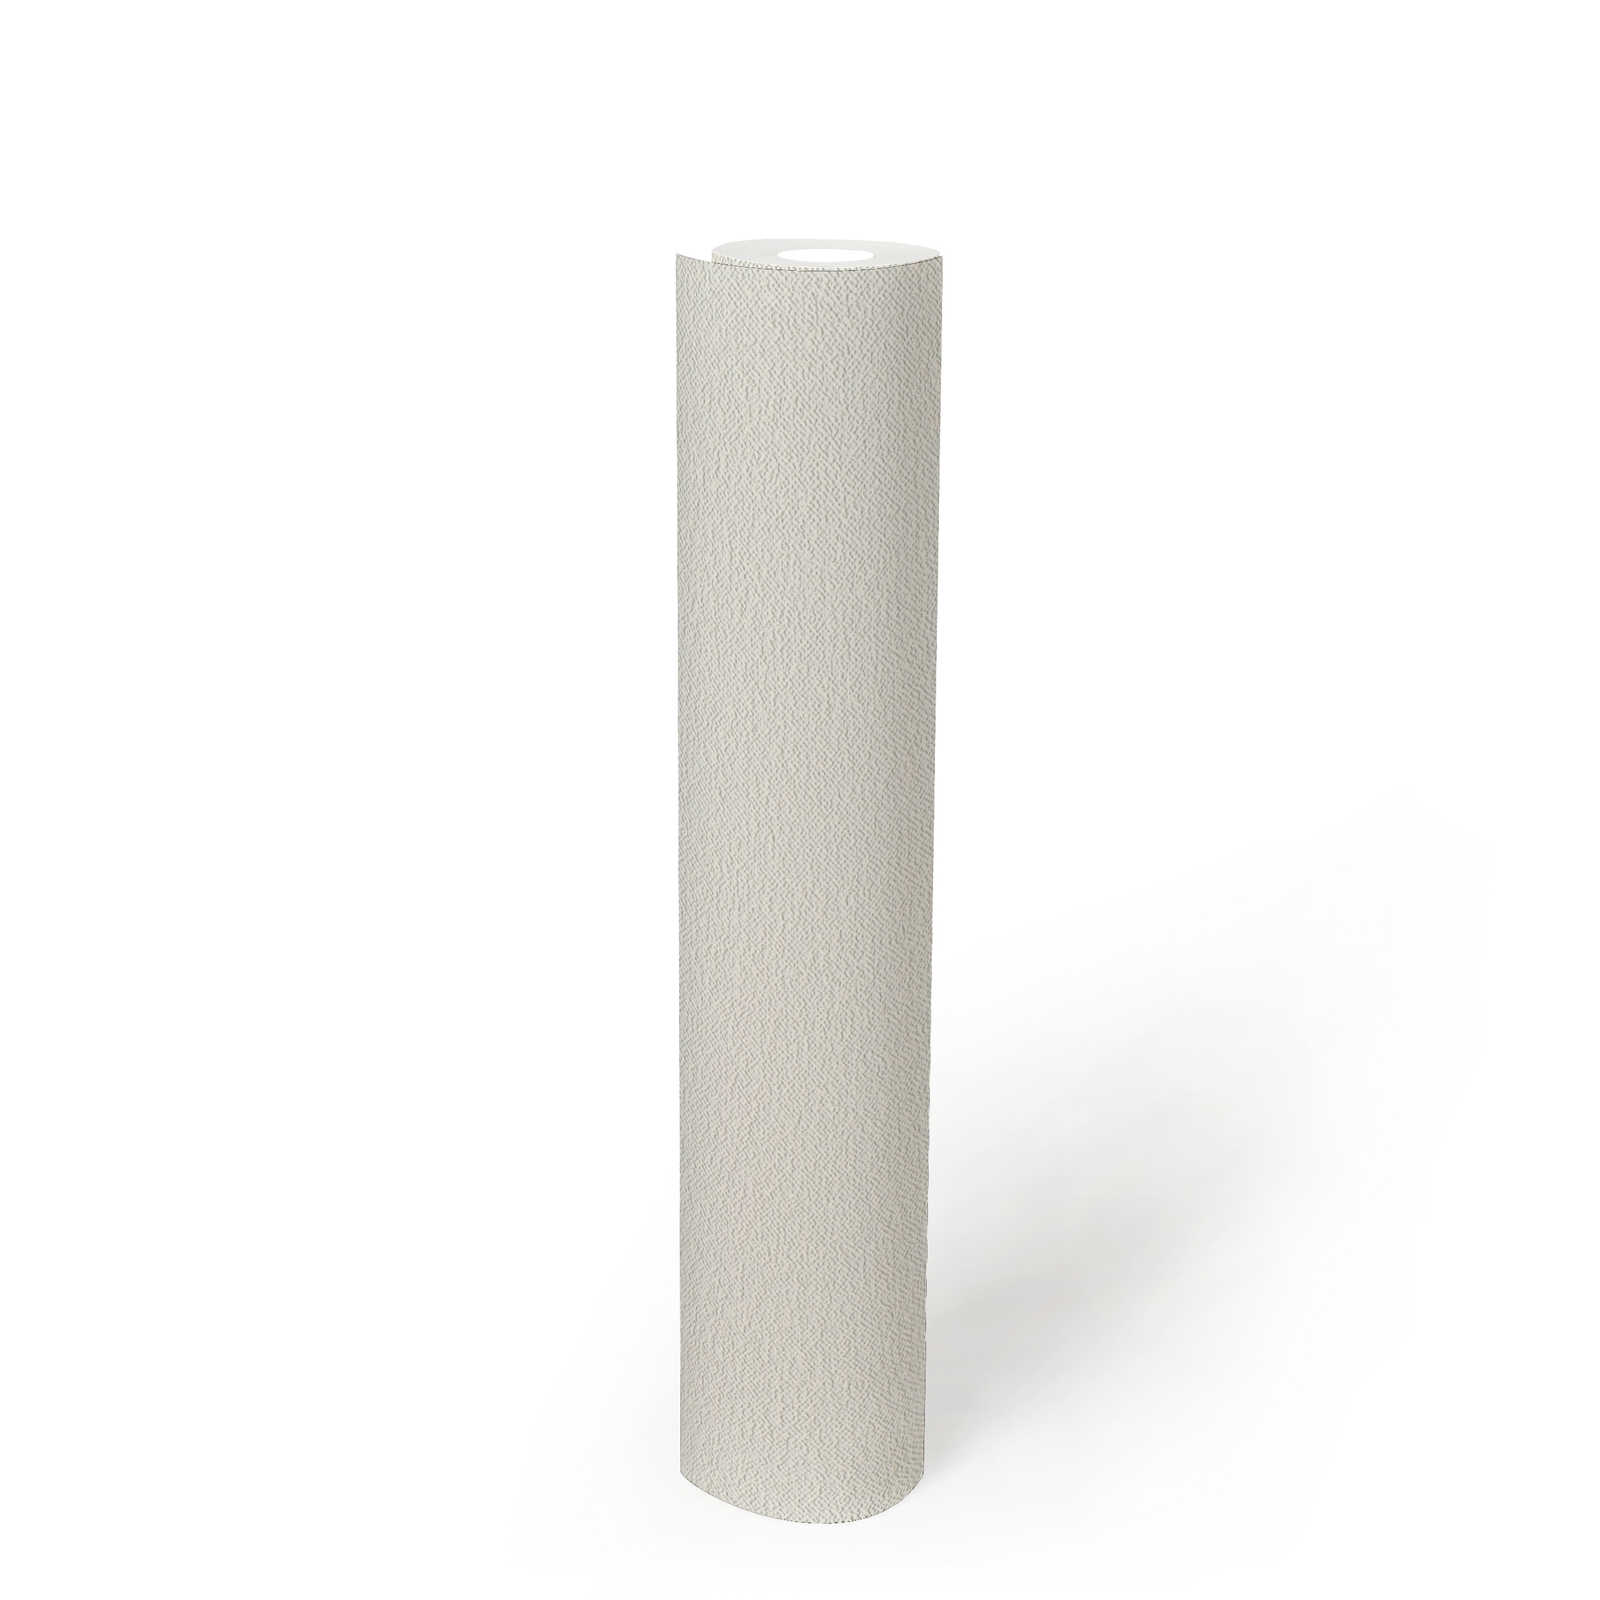             Verfbaar behangpapier met schuimstructuur - wit
        